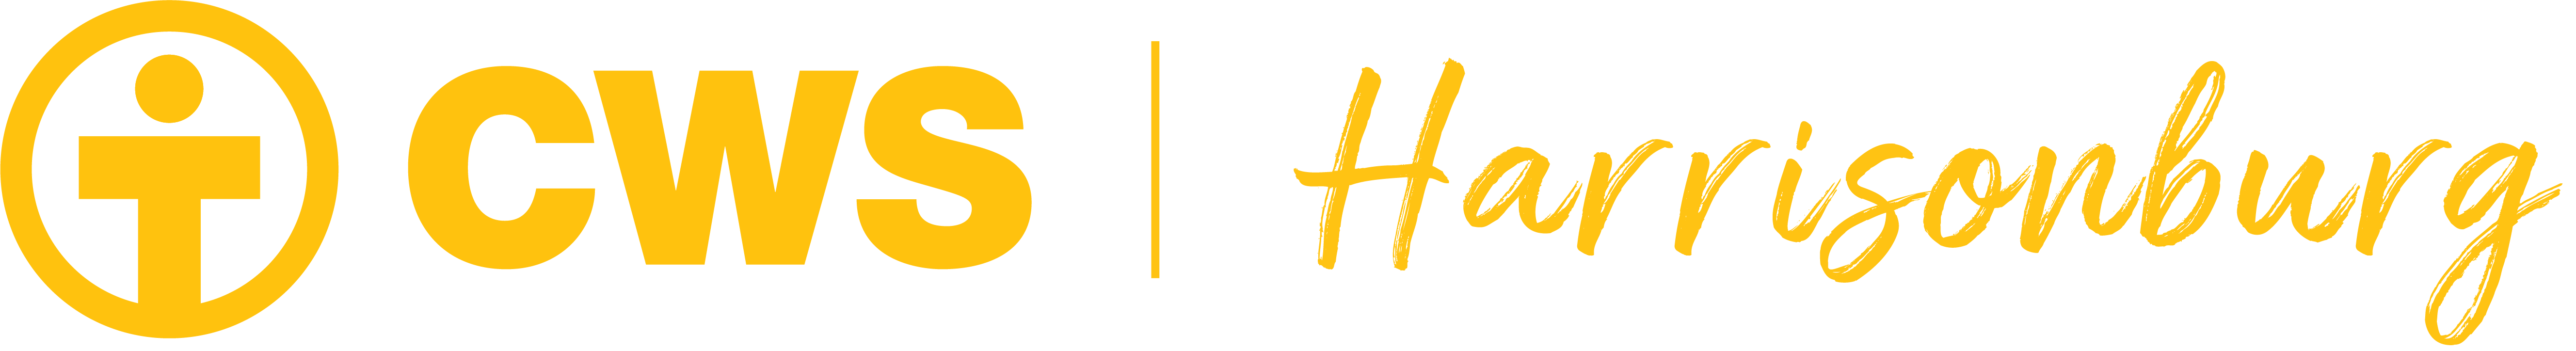 CWS Harrisonburg logo